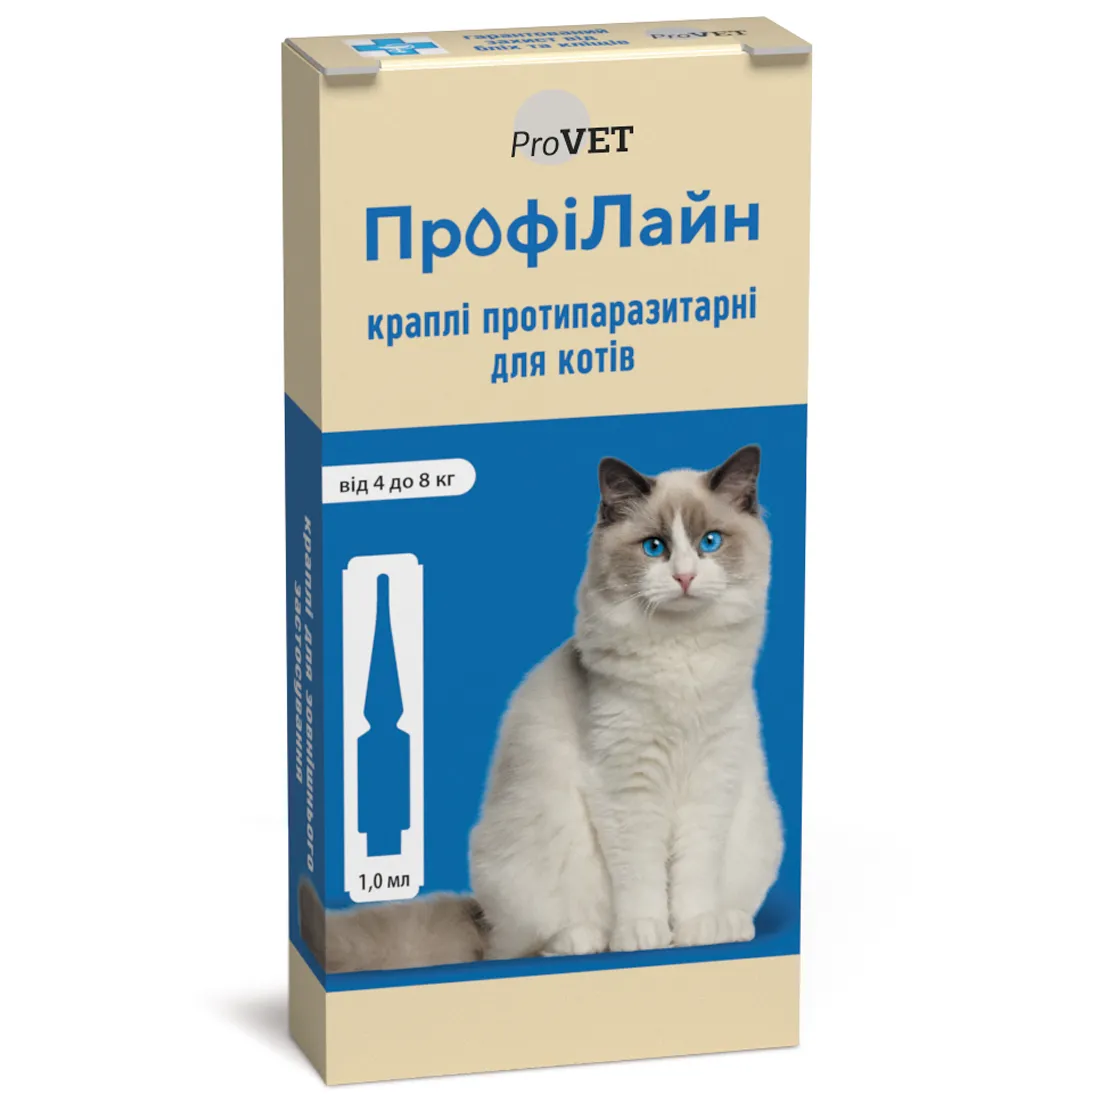 Капли на холку для кошек ProVET ПрофиЛайн, от внешних паразитов, от 4 до 8 кг, 4 пипетки по 1 мл (PR240989) - фото 1